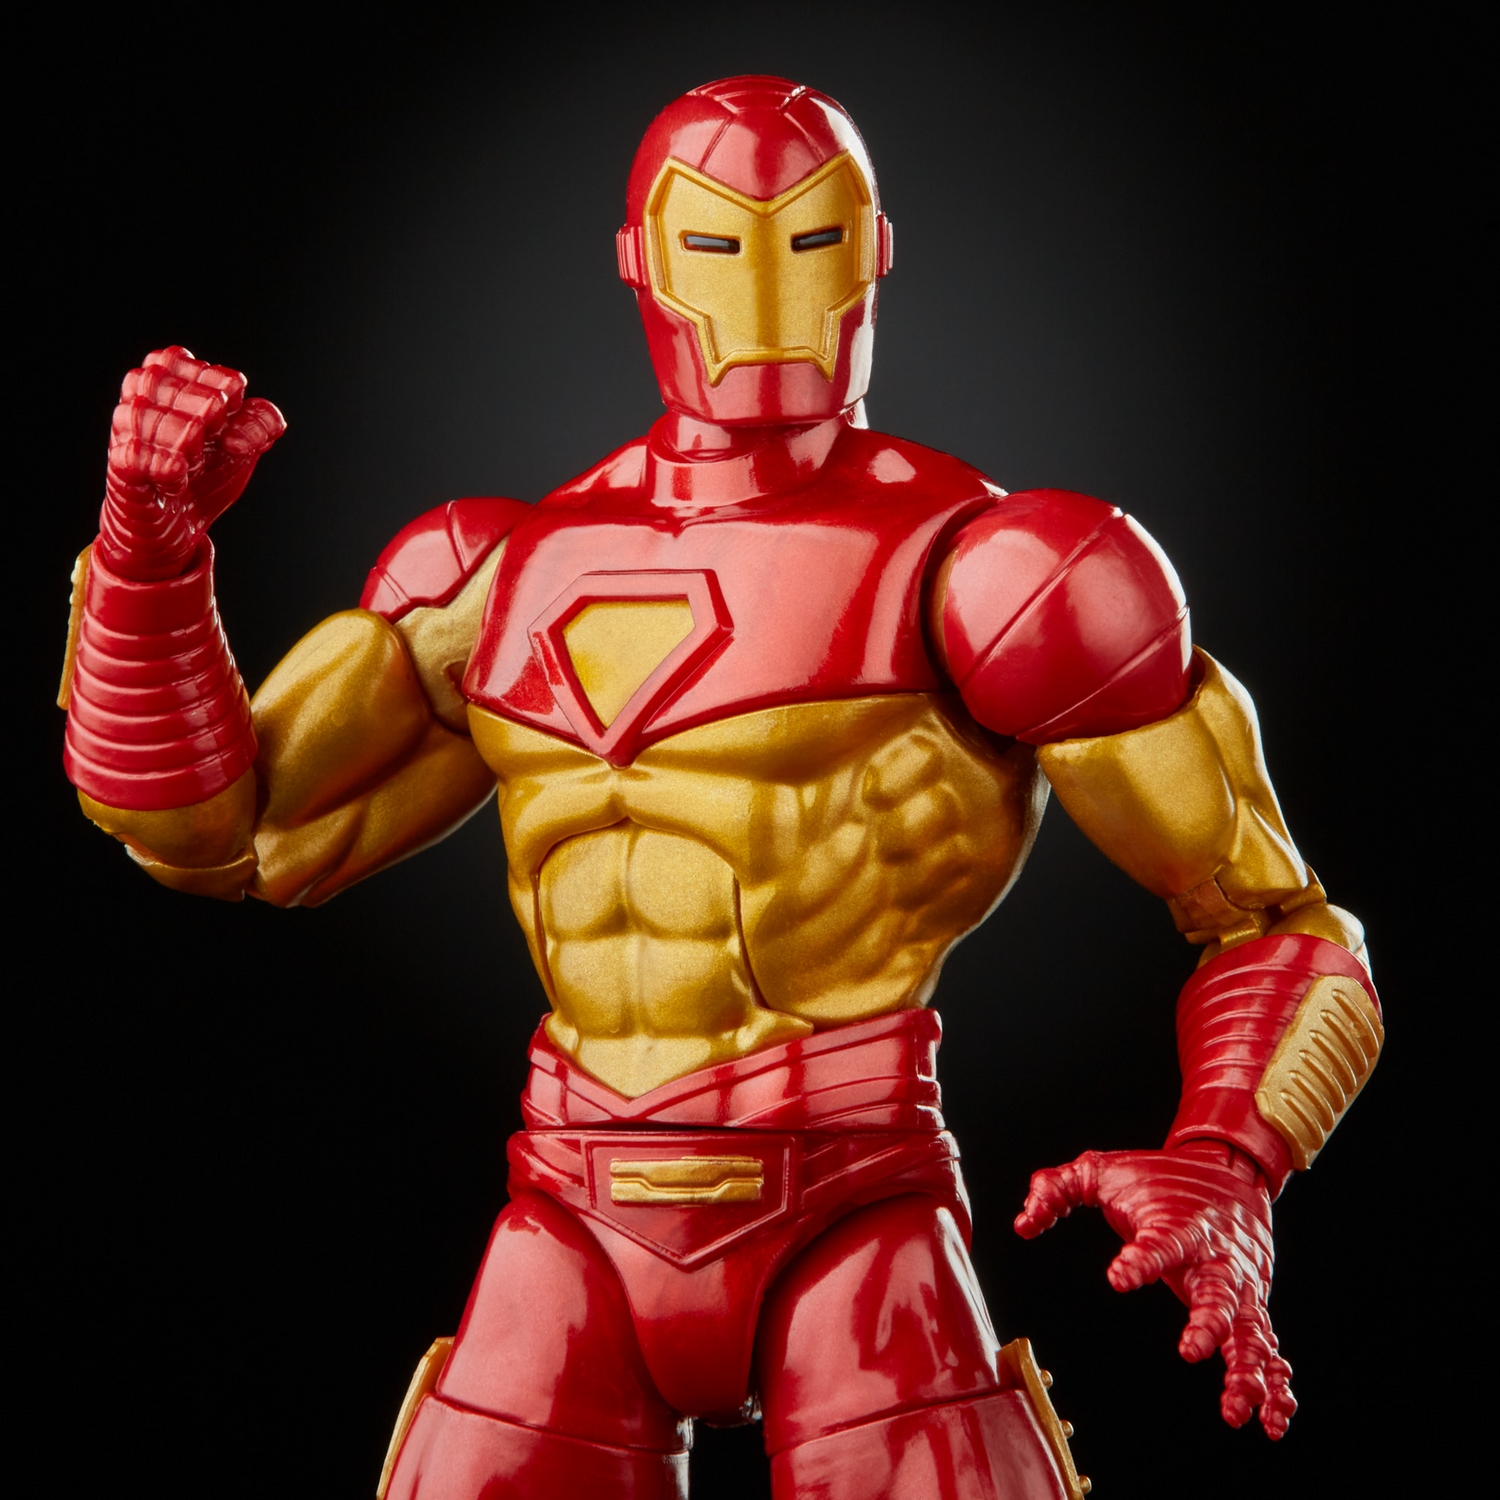 MARVEL LEGENDS SERIES 6-INCH IRON MAN Figure Assortment - Modular Iron Man - oop (4).jpg